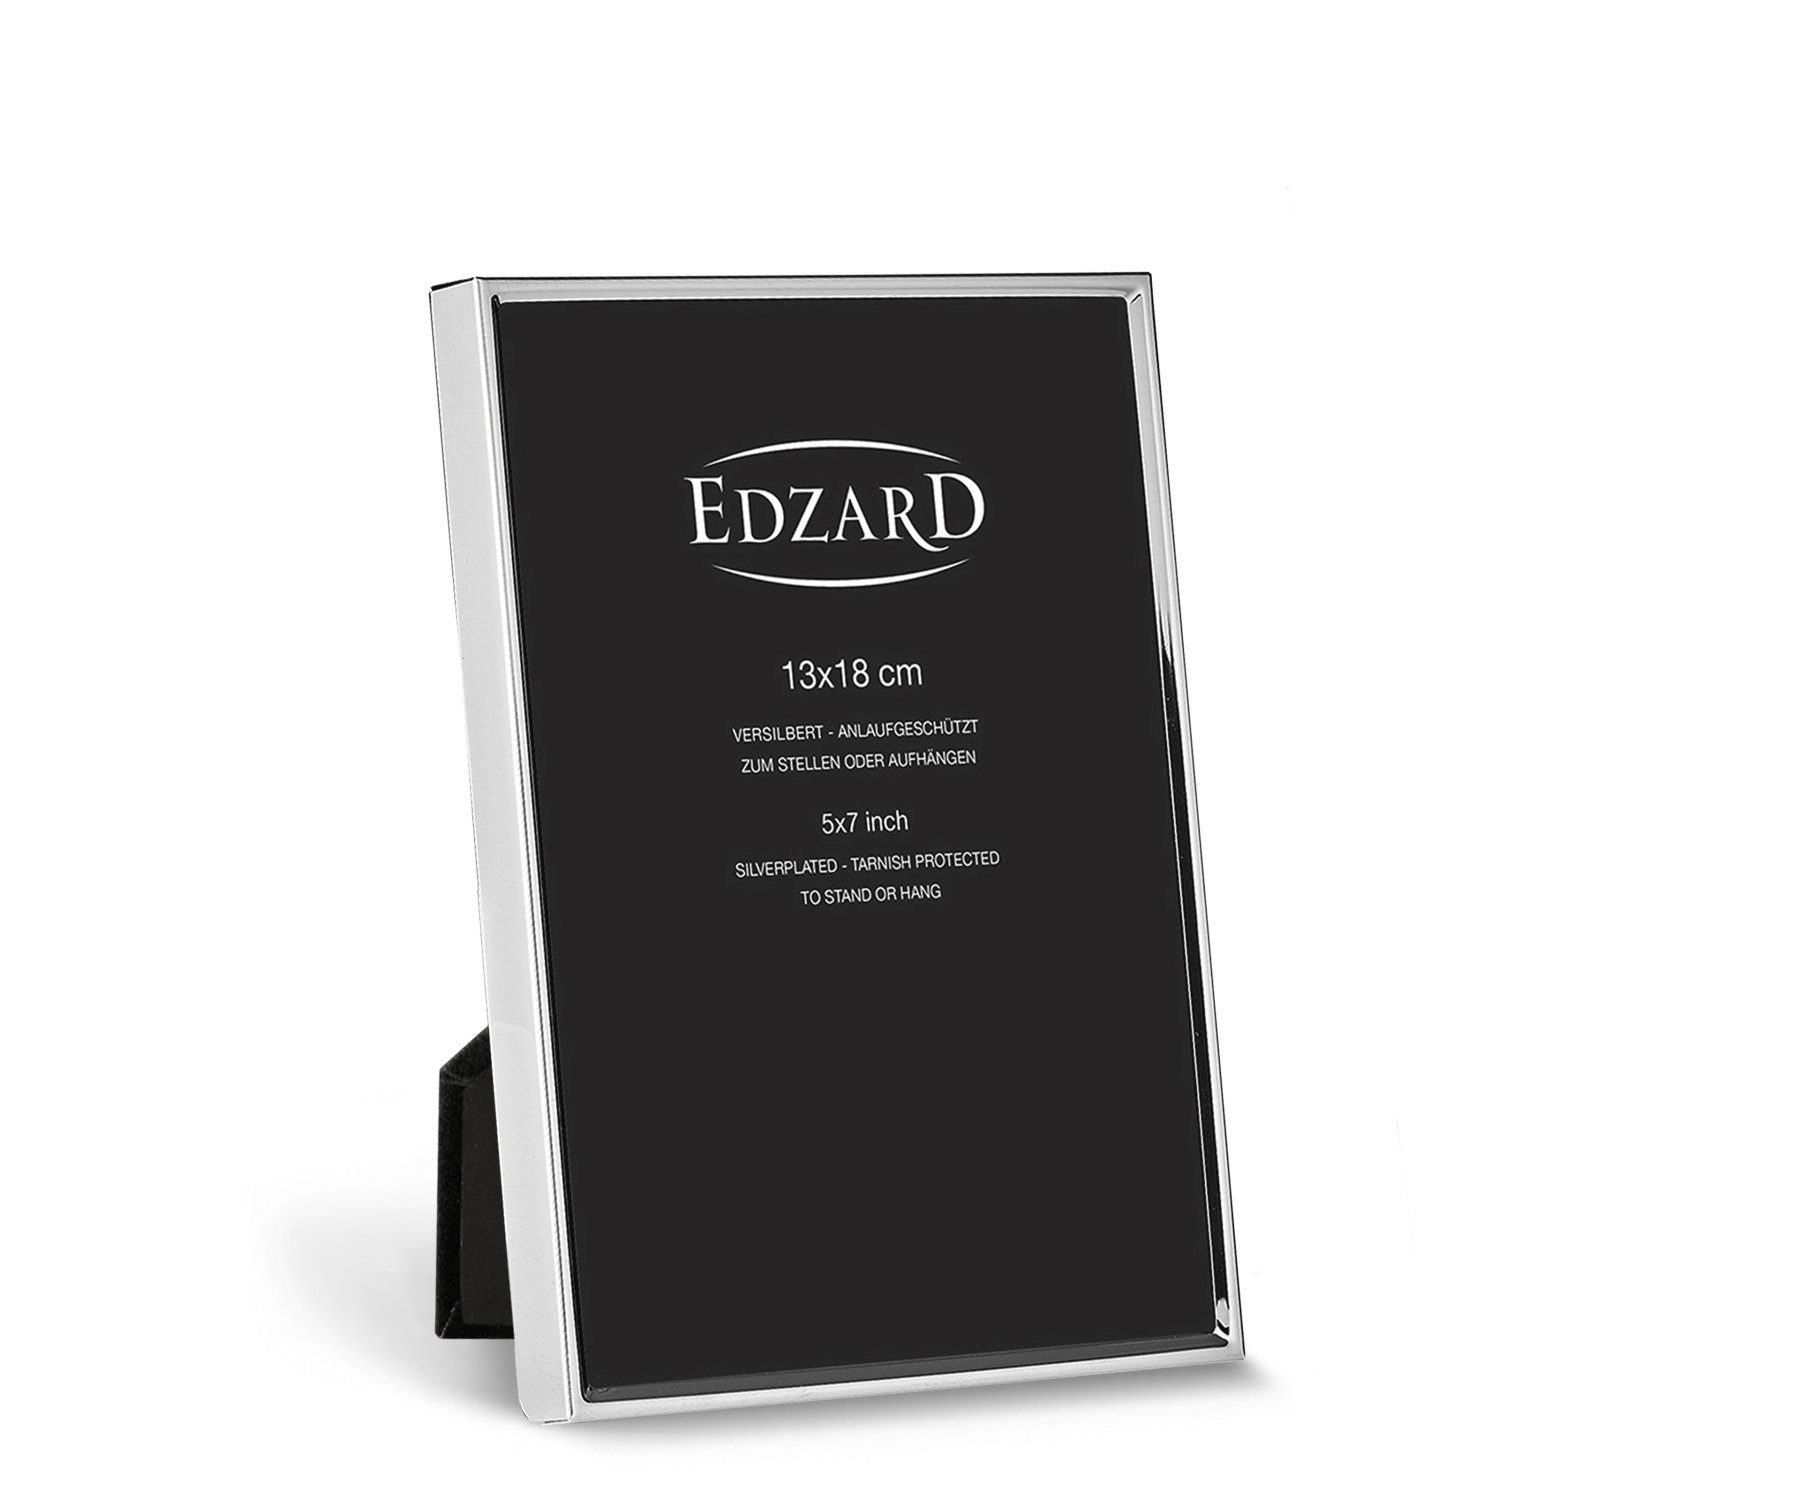 EDZARD Bilderrahmen , versilbert und anlaufgeschützt, für 13x18 cm Foto